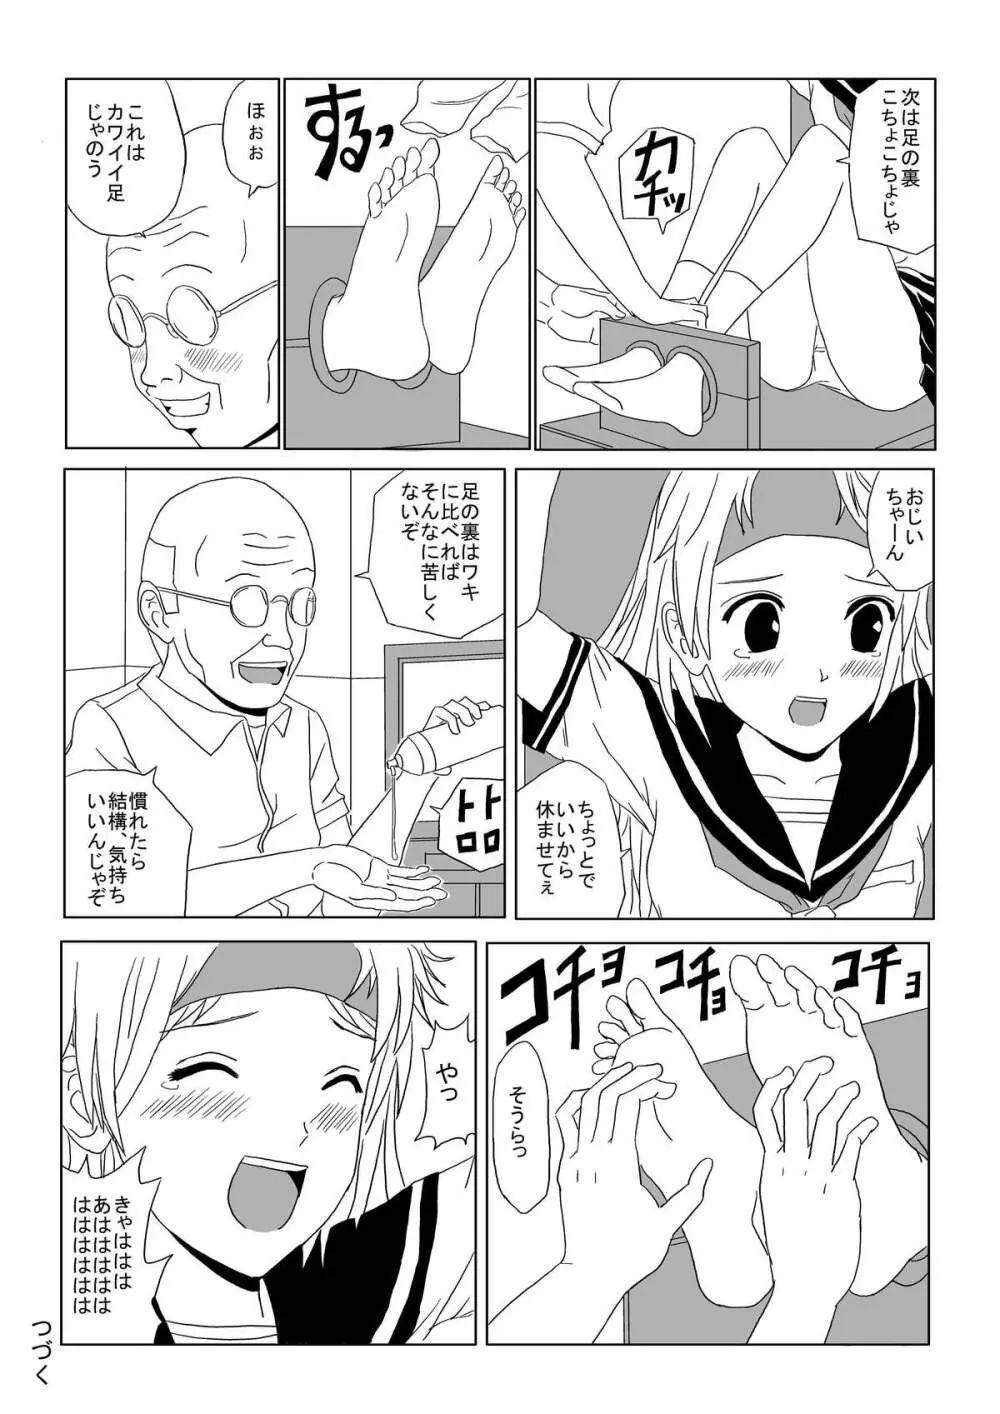 Kusuguri Manga 3 21ページ